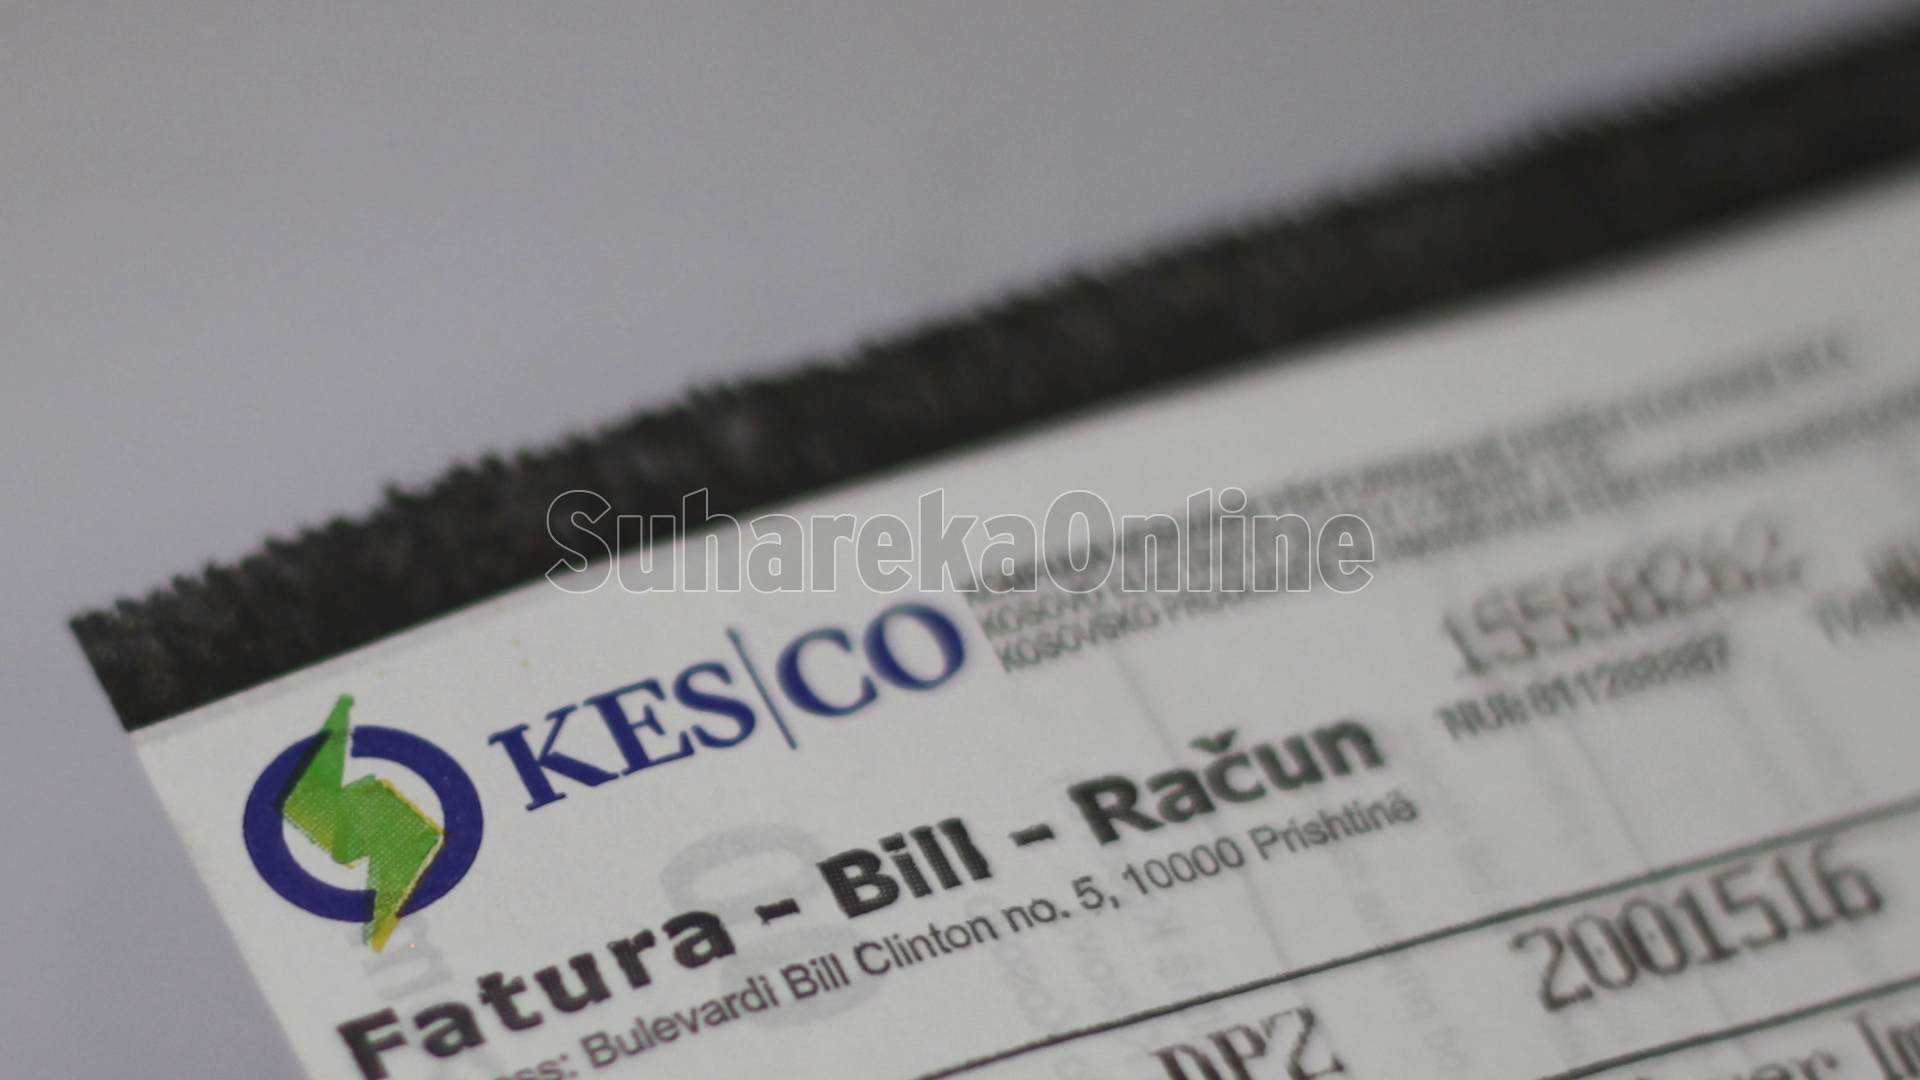 Faturat e fryera të energjisë elektrike, mbi 1700 konsumatorë janë ankuar në KESCO